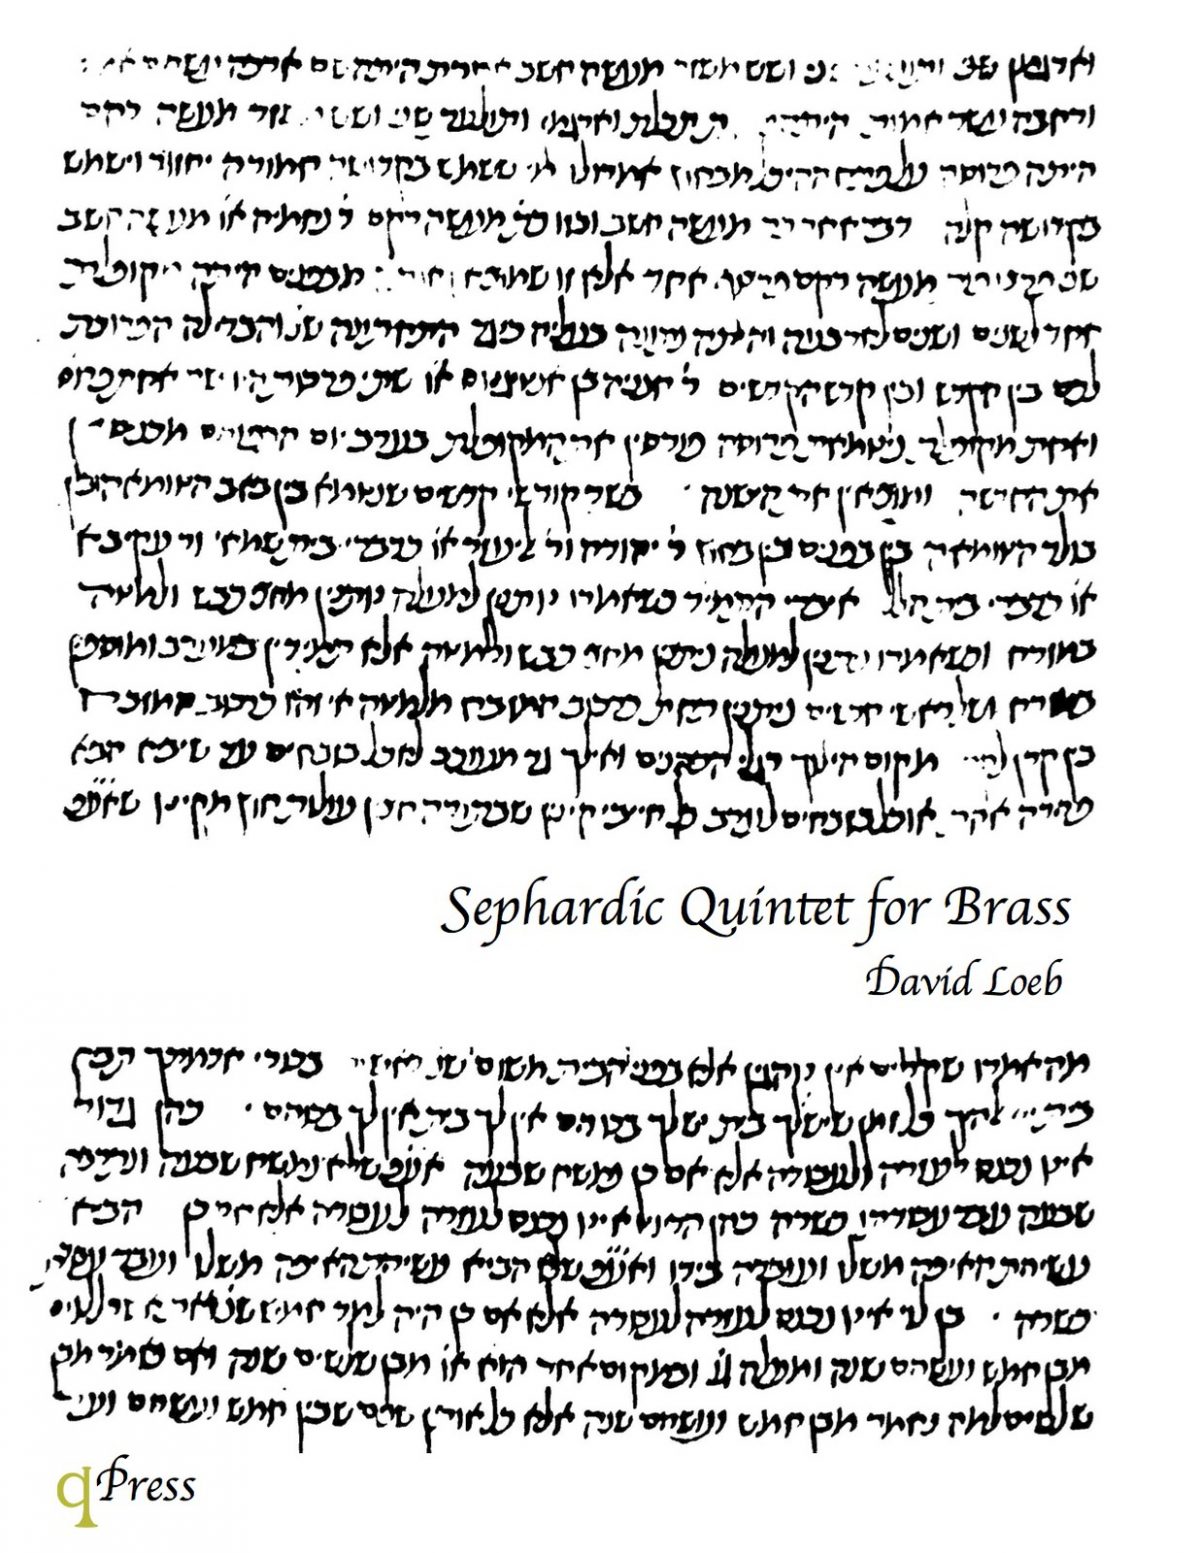 Sephardic Quintet for Brass